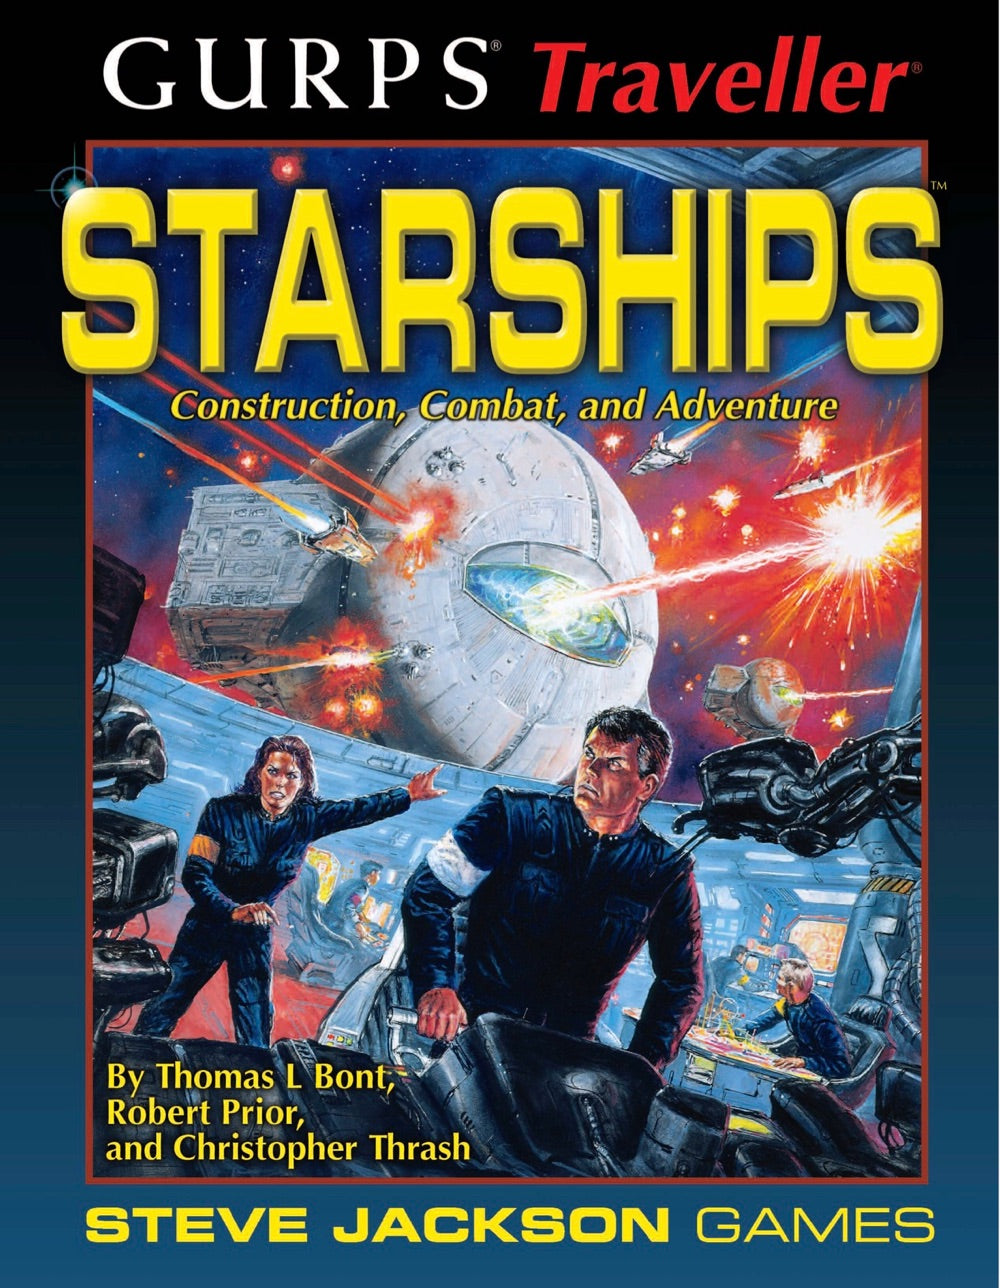 GURPS Traveller Classic: Starships